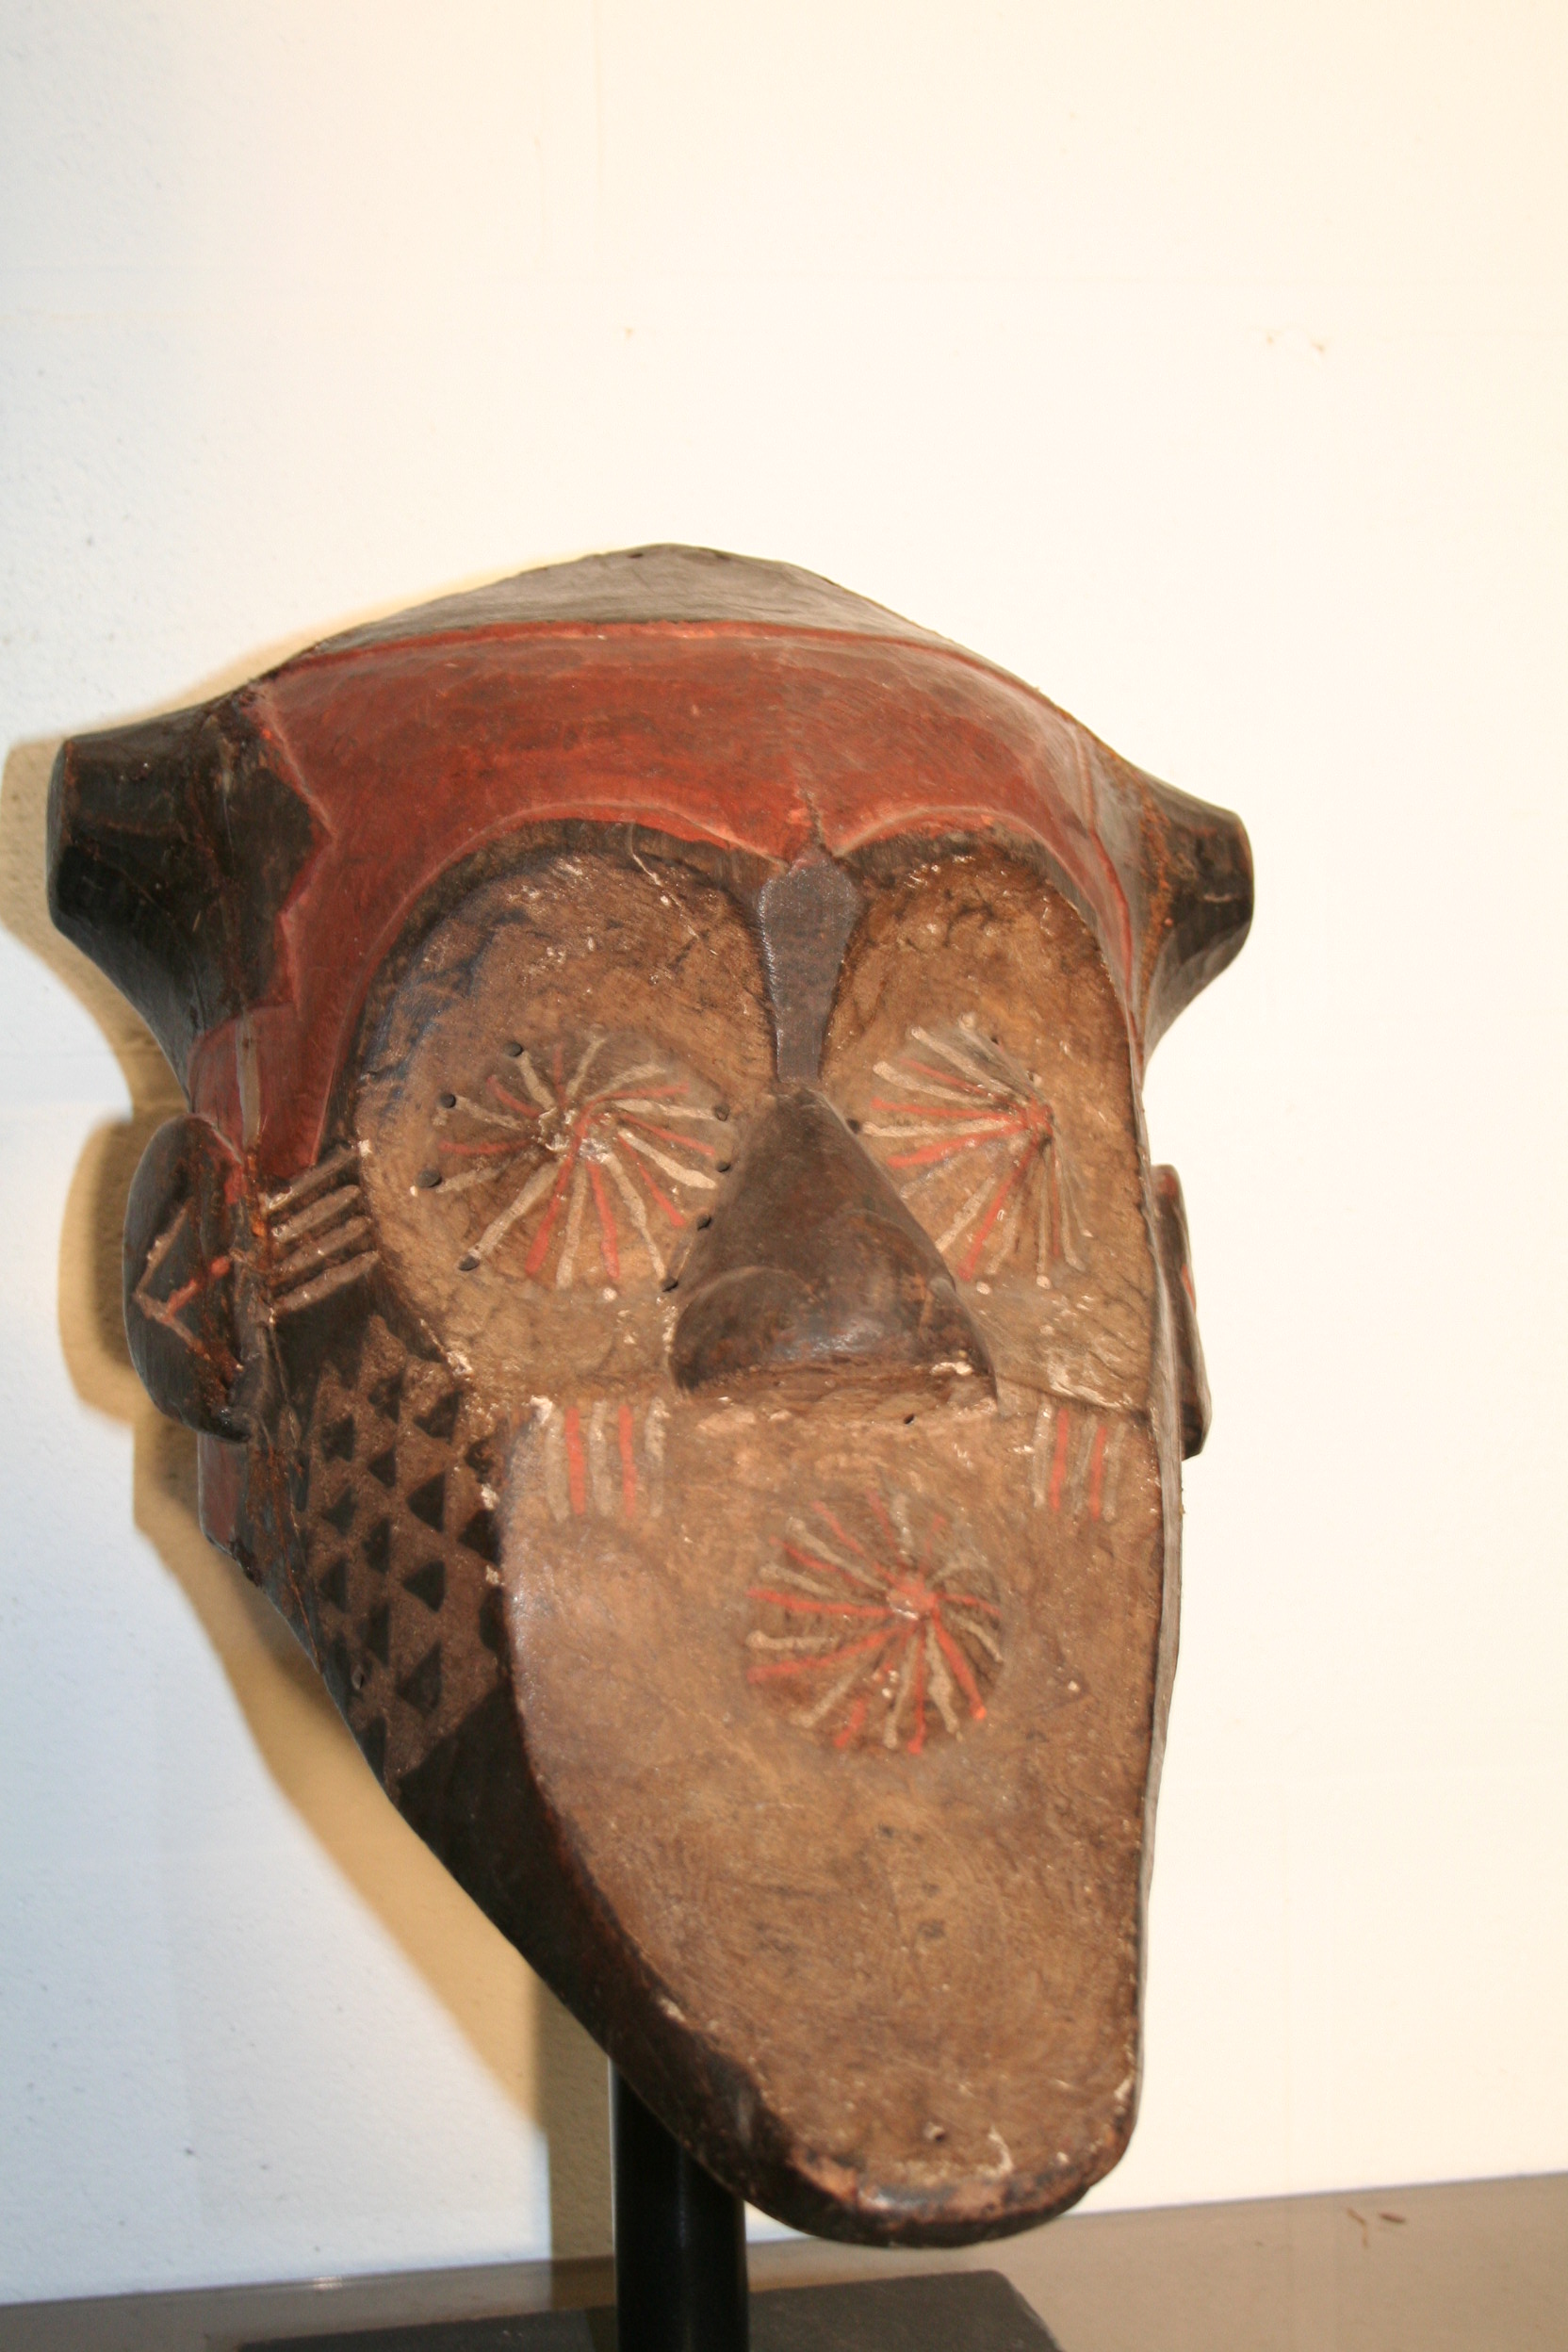 kuba -(Kete), d`afrique : R.d.du Congo, statuette kuba -(Kete), masque ancien africain kuba -(Kete), art du R.d.du Congo - Art Africain, collection privées Belgique. Statue africaine de la tribu des kuba -(Kete), provenant du R.d.du Congo, 1652: Vieux masque kete du nord;1ère moitié du 20eme sc.h.50cm.le masque a une coiffe avec 2 lobes noirs;le visage est concave avec les yeux et la bouche coniques exorbités et striés,le tout décoré de pigments rouges et noirs;Le menton est allongé.(col.Minga Kin.)

Oud Kete masker uit het noorden;eerste helft 20ste eeuw. 50cm.h.Het masker heeft een zwarte haartooi;een concaaf gezicht met kegelvormige gestreepte  ogen en mond;alles met rood en zwart geverfd. en een lang kin.
(col. Minga Kin.). art,culture,masque,statue,statuette,pot,ivoire,exposition,expo,masque original,masques,statues,statuettes,pots,expositions,expo,masques originaux,collectionneur d`art,art africain,culture africaine,masque africain,statue africaine,statuette africaine,pot africain,ivoire africain,exposition africain,expo africain,masque origina africainl,masques africains,statues africaines,statuettes africaines,pots africains,expositions africaines,expo africaines,masques originaux  africains,collectionneur d`art africain